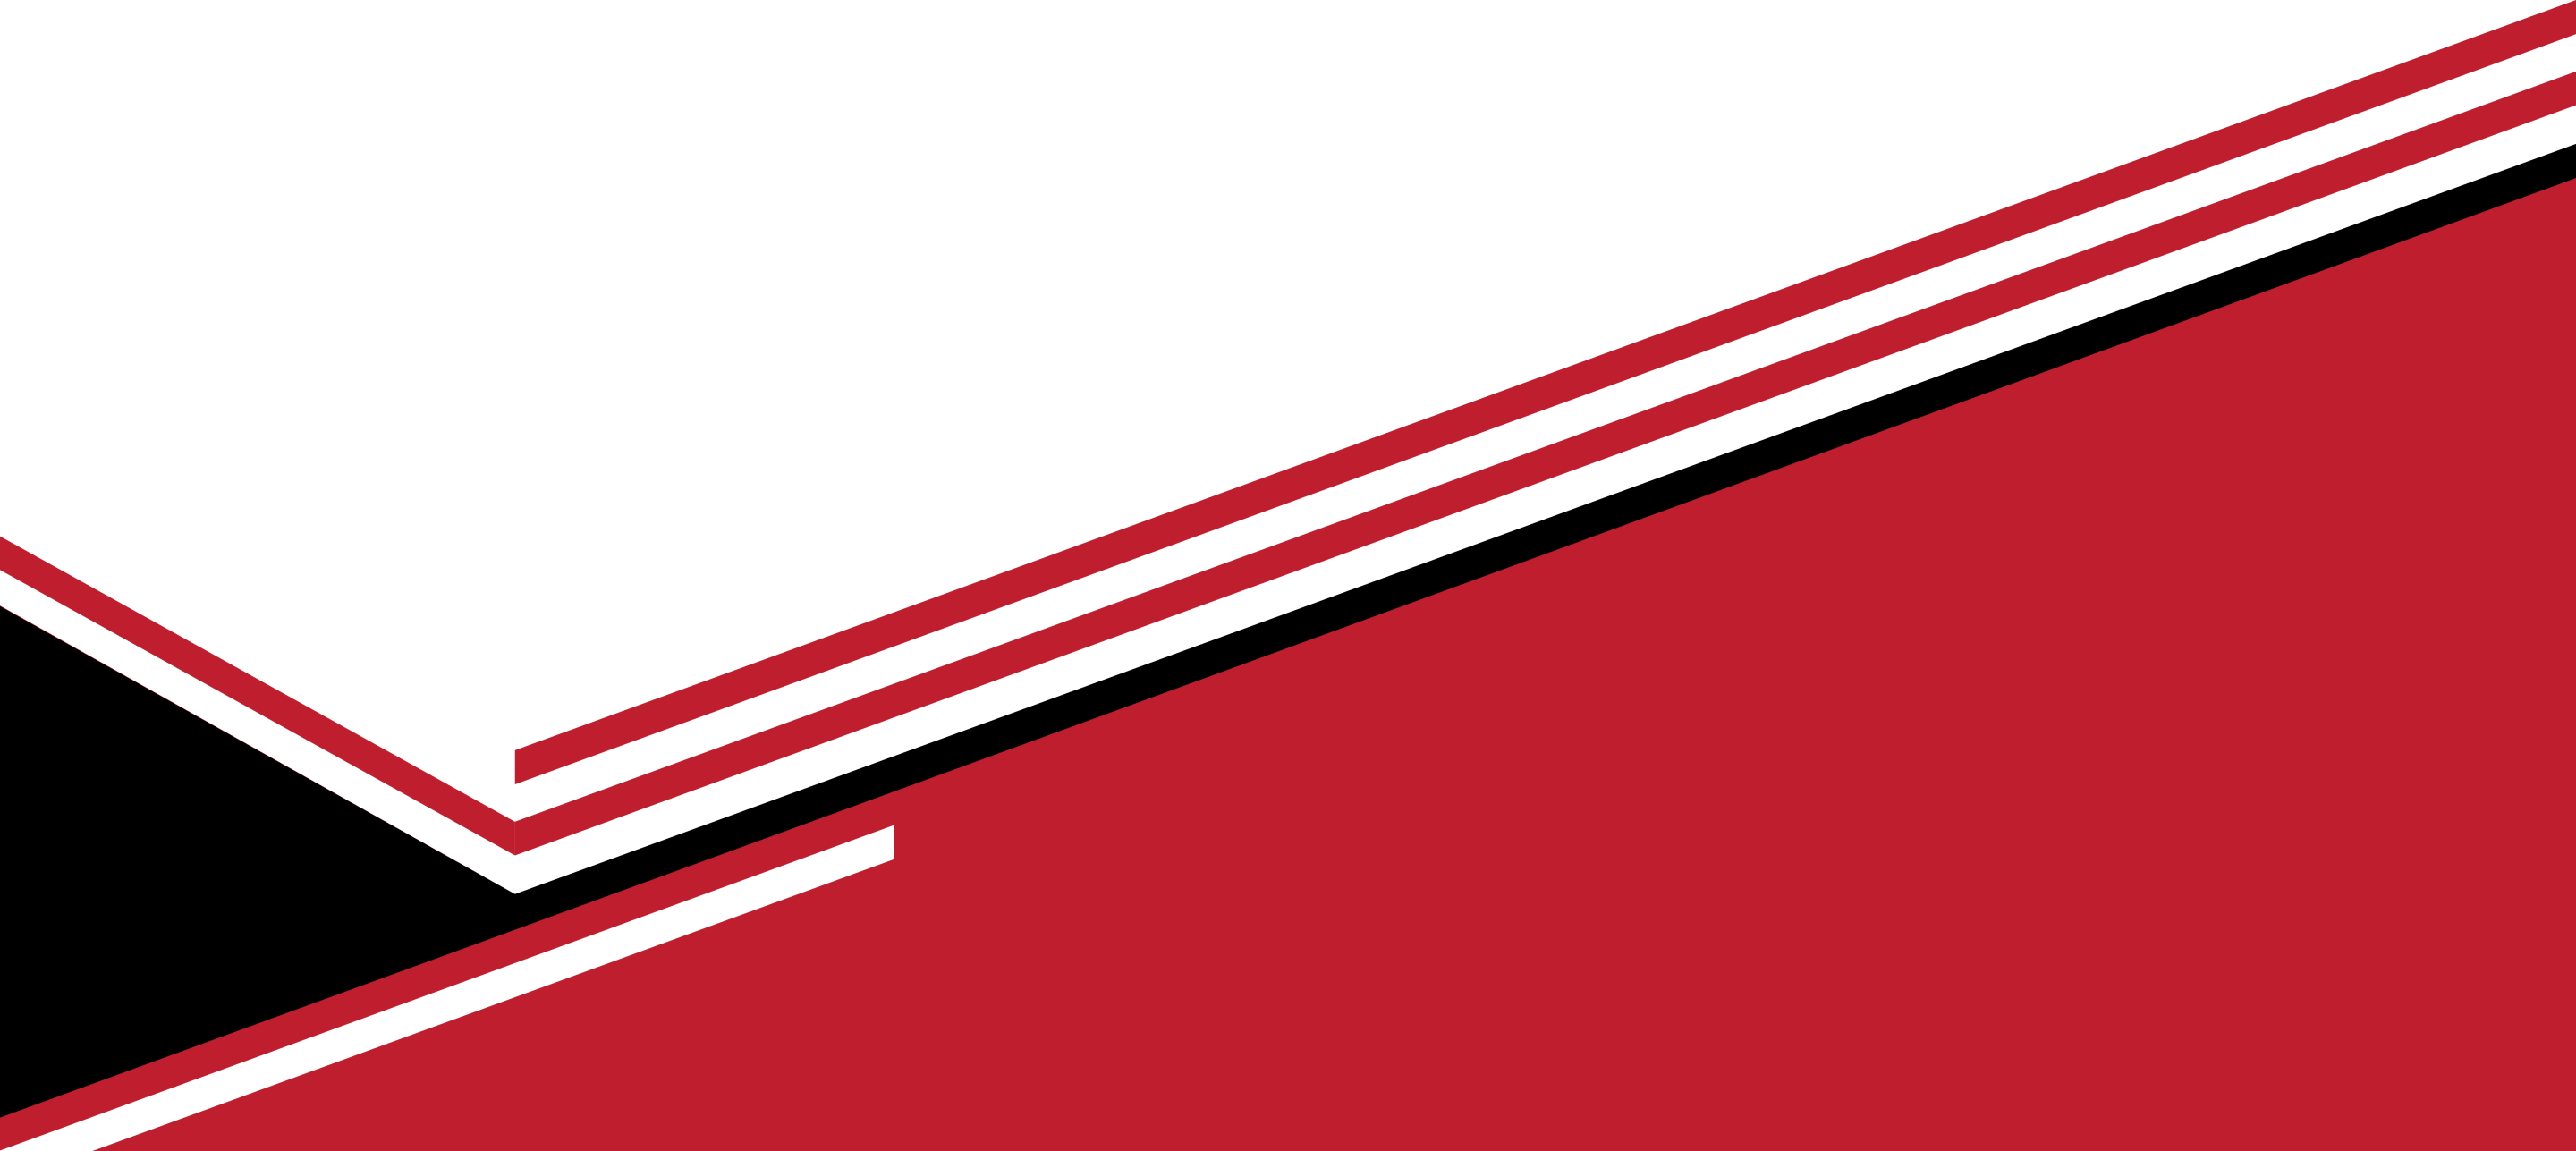 Красный абстрактный PNG Image